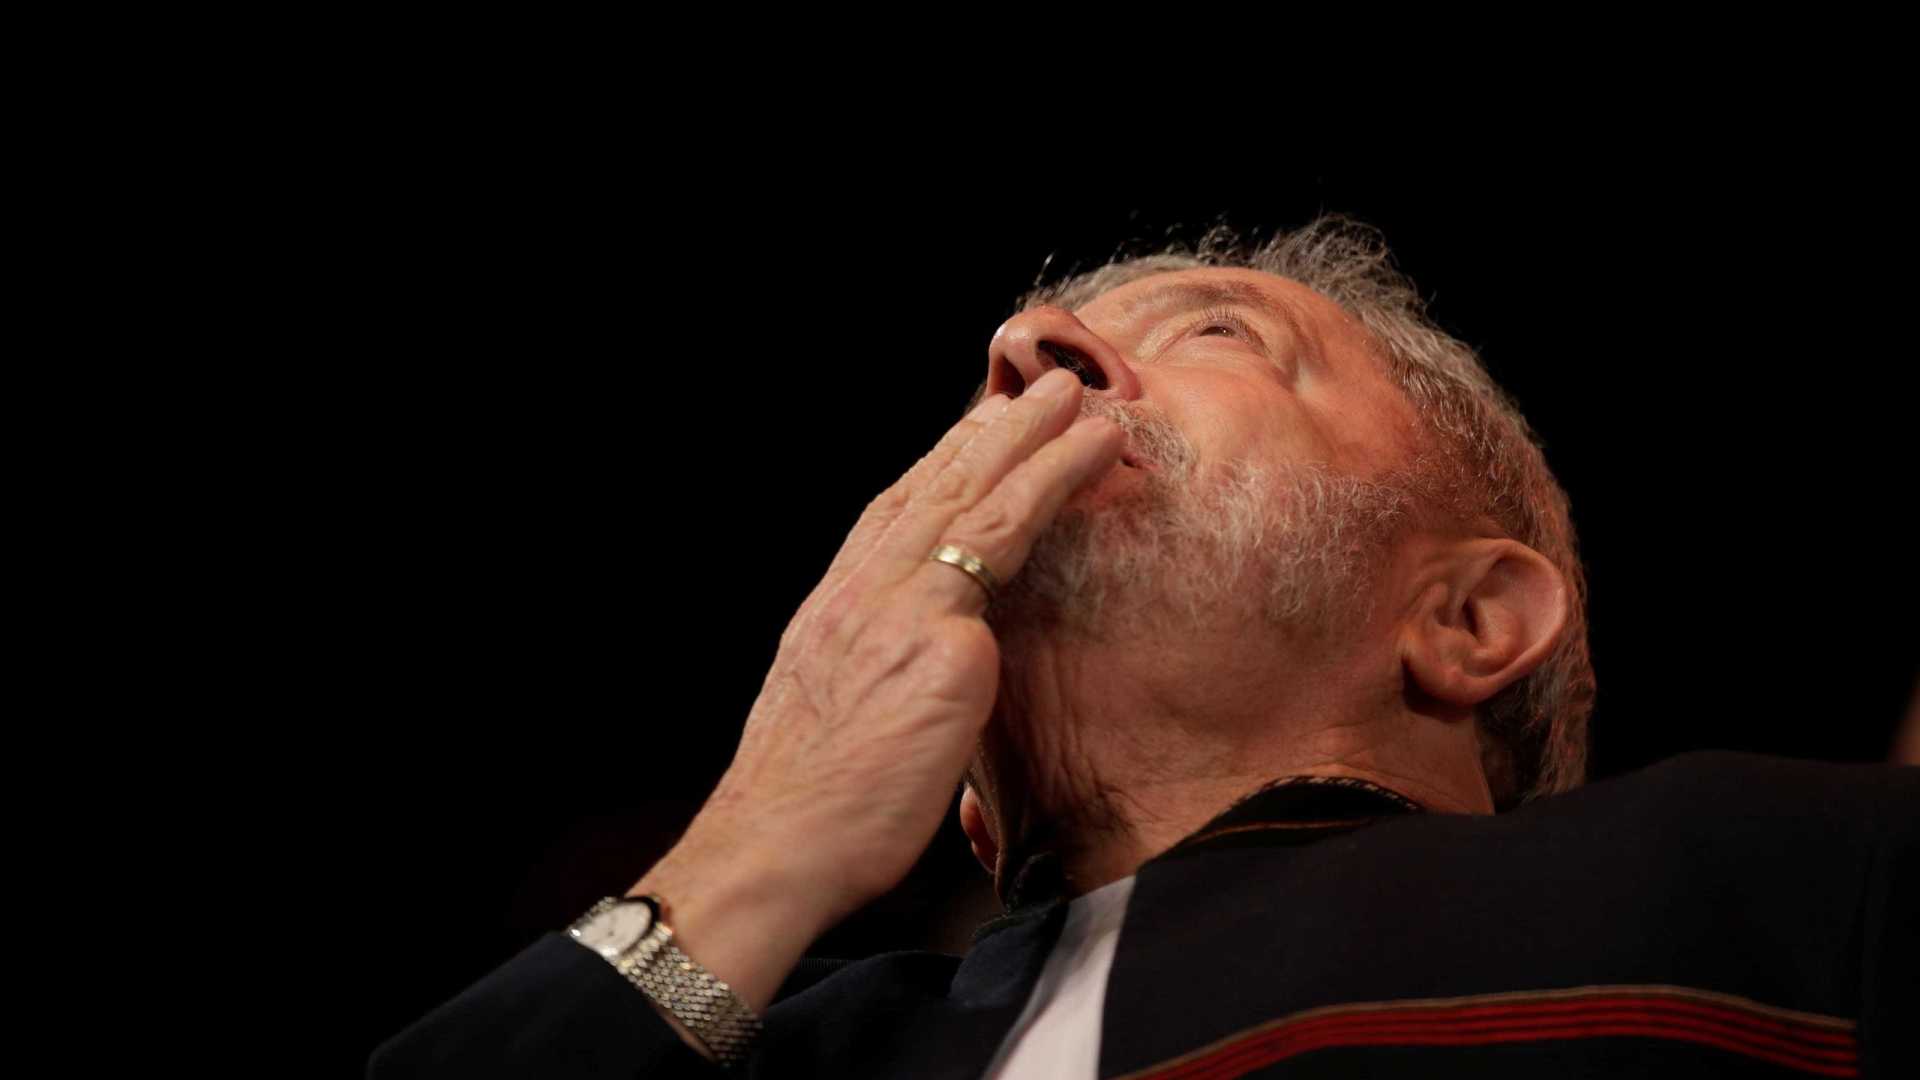 Lula quer de volta benefícios de ex-presidente